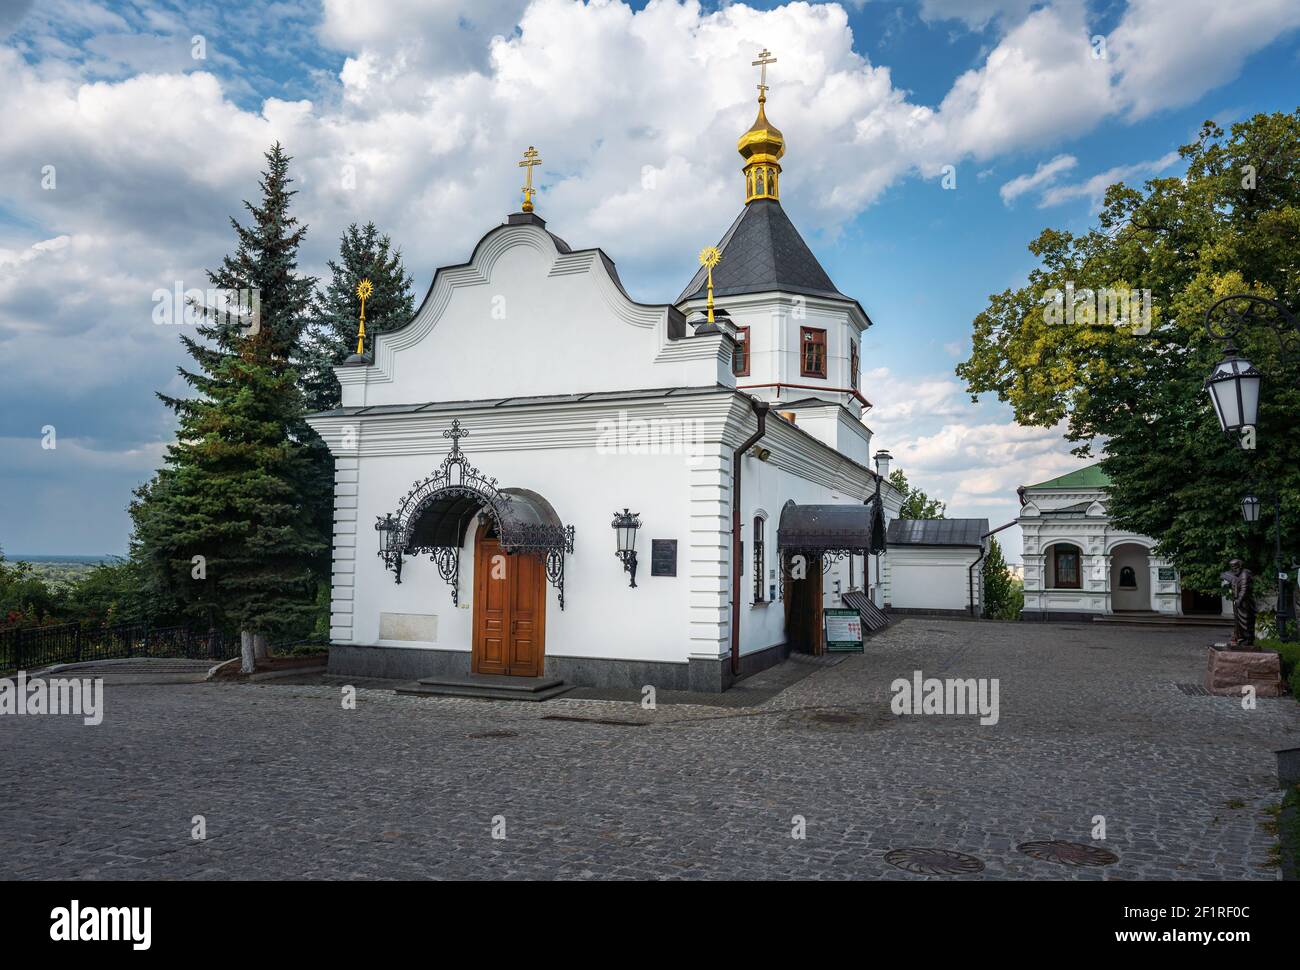 Konzeption der St. Anna Kirche in Pechersk Lavra Kloster Komplex - Kiew, Ukraine Stockfoto